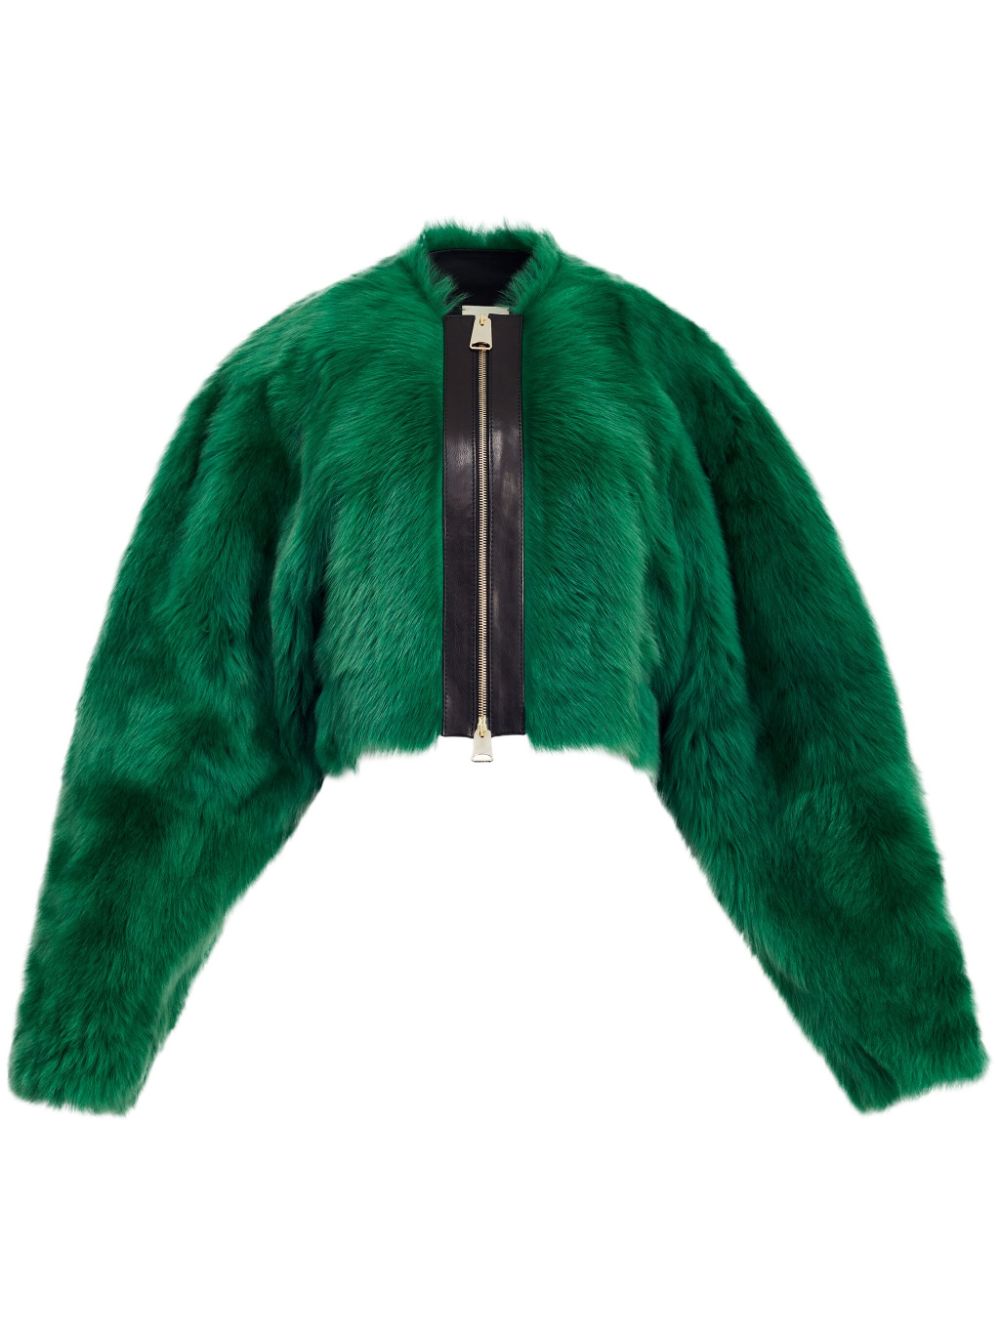 KHAITE The Gracell shearling jacket - Green von KHAITE